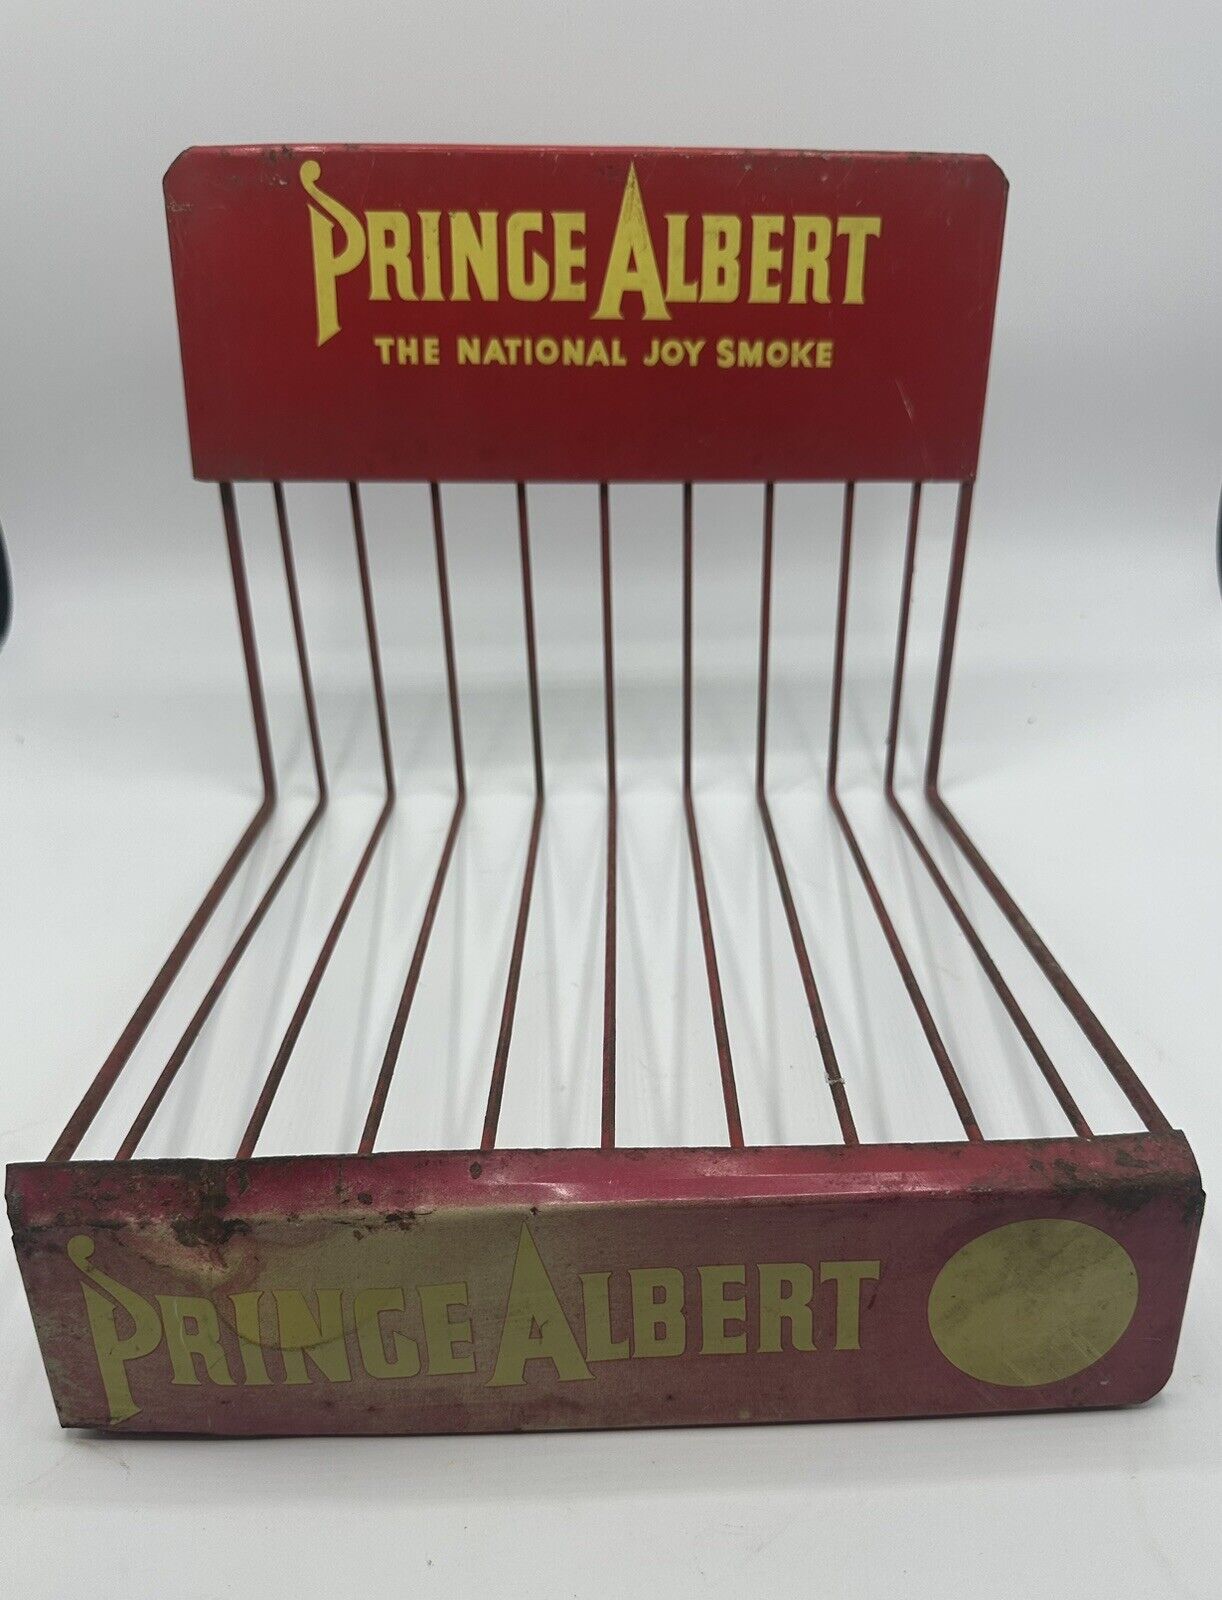 Vintage Prince Albert “The National Joy Smoke” Counter Display Rack